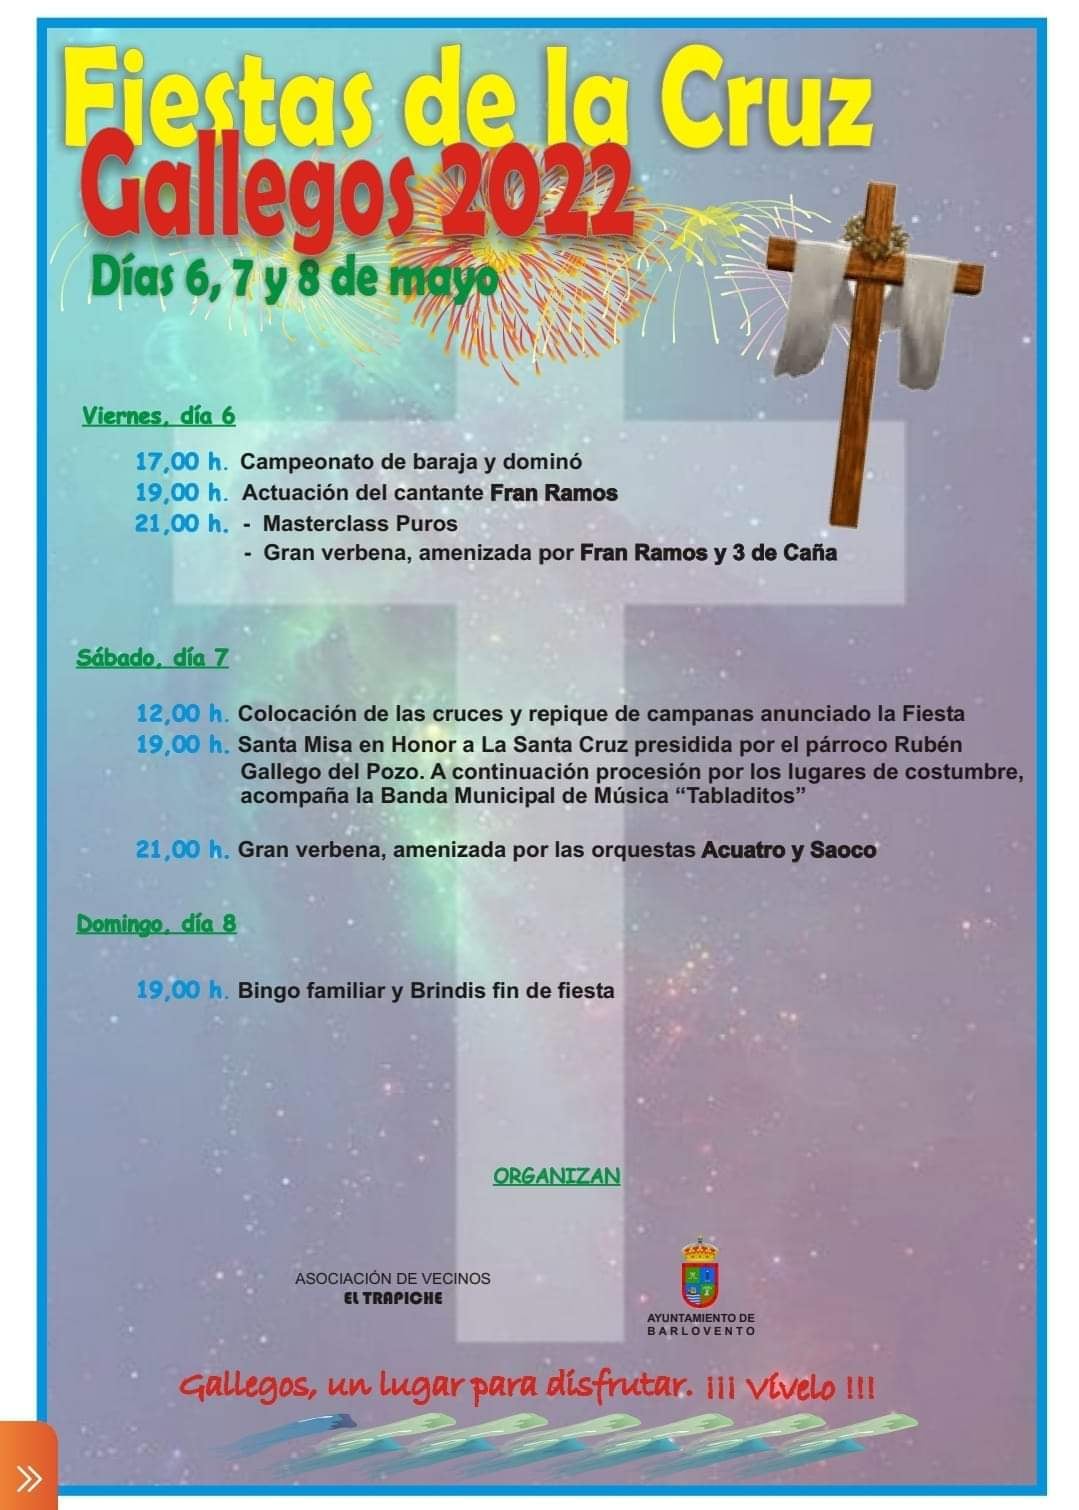 08-05-2022-fiesta-de-la-cruz-gallegos-barlovento